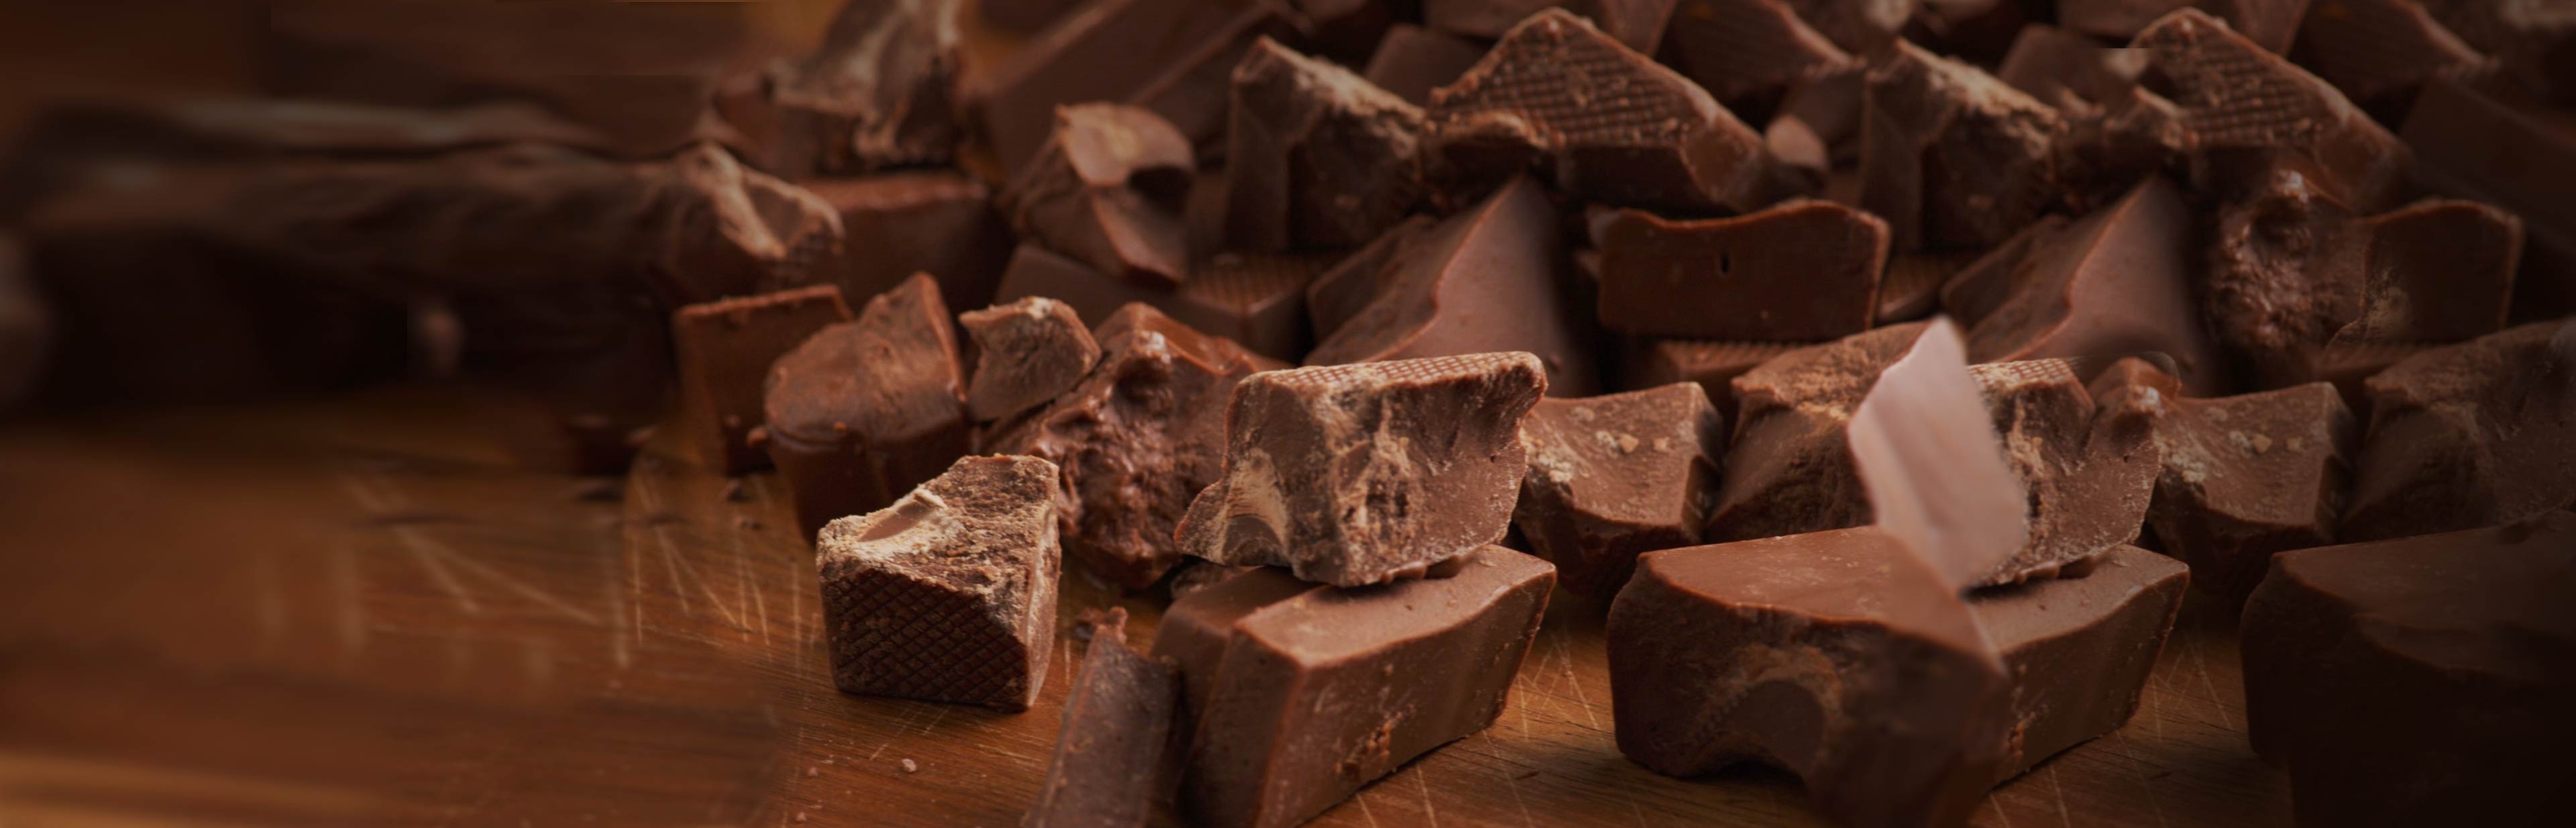 3x waarom pure chocola gezond is